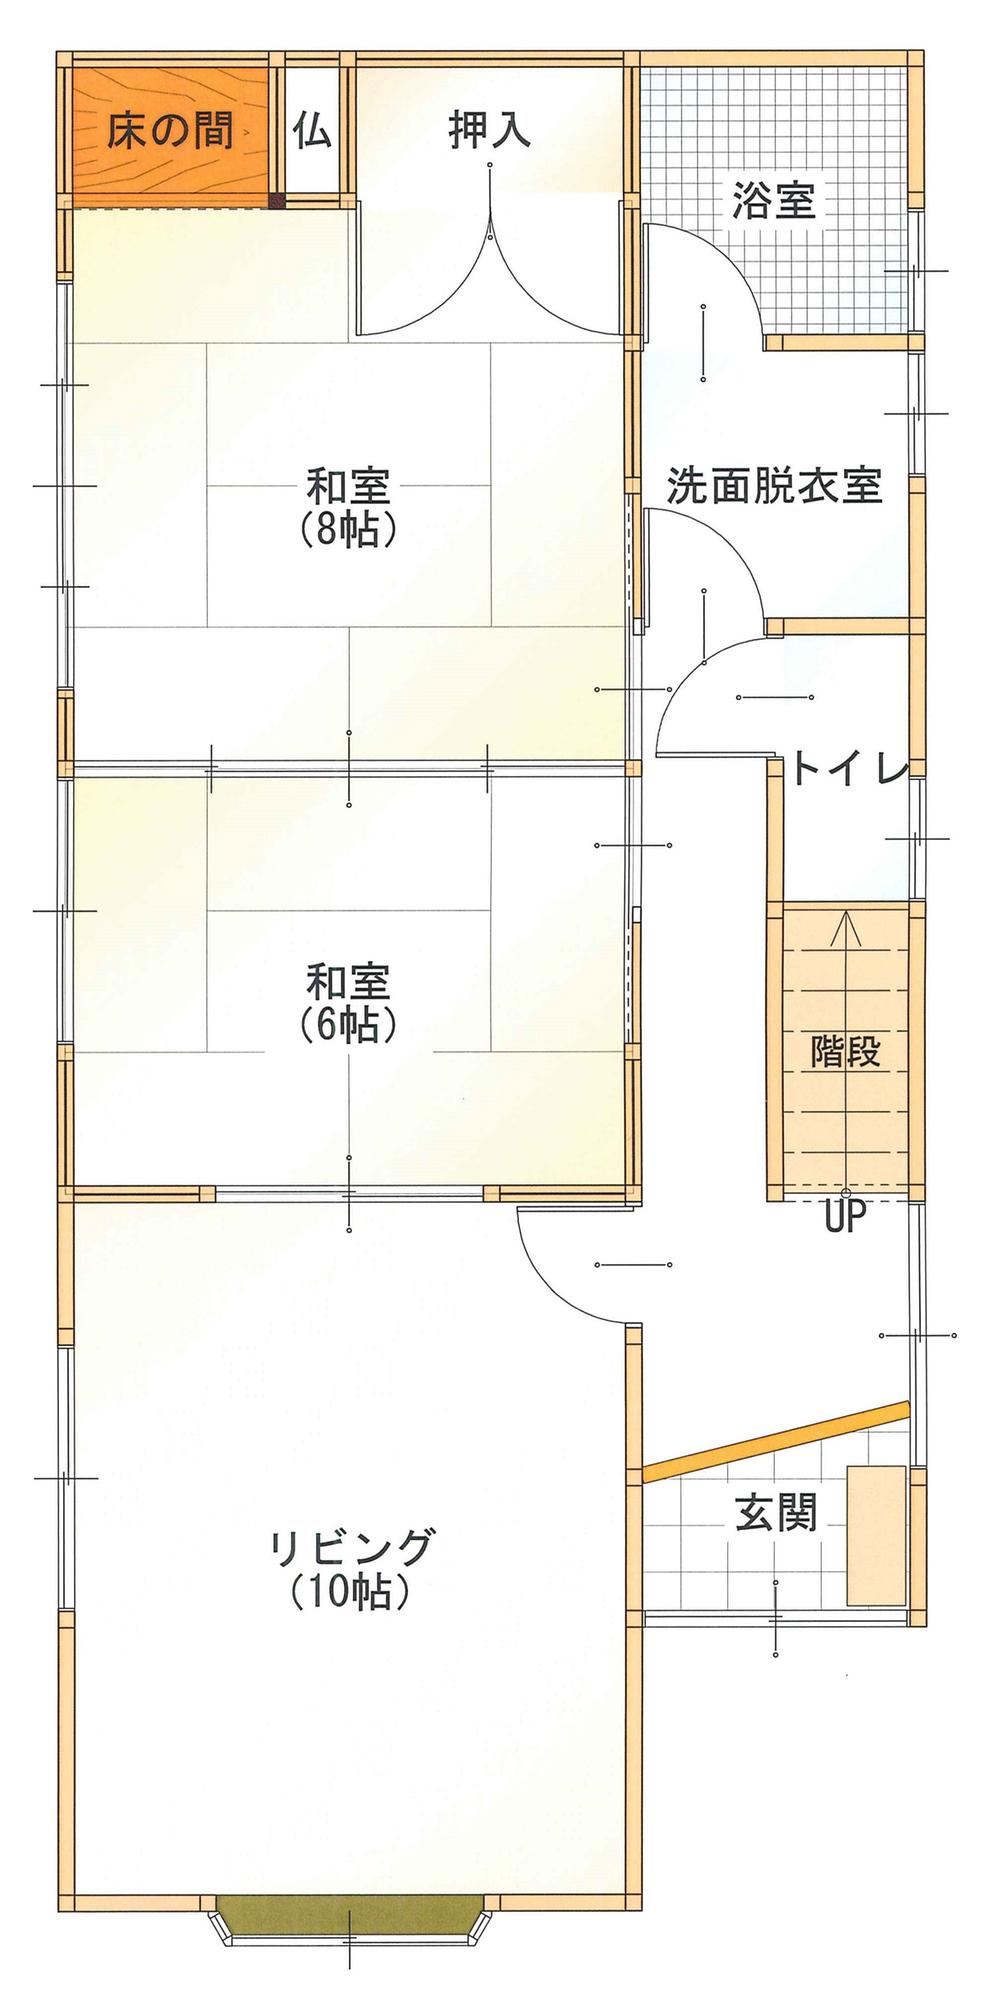 Floor plan. 11.8 million yen, 5LDK + S (storeroom), Land area 154.47 sq m , Building area 112.19 sq m 1 floor